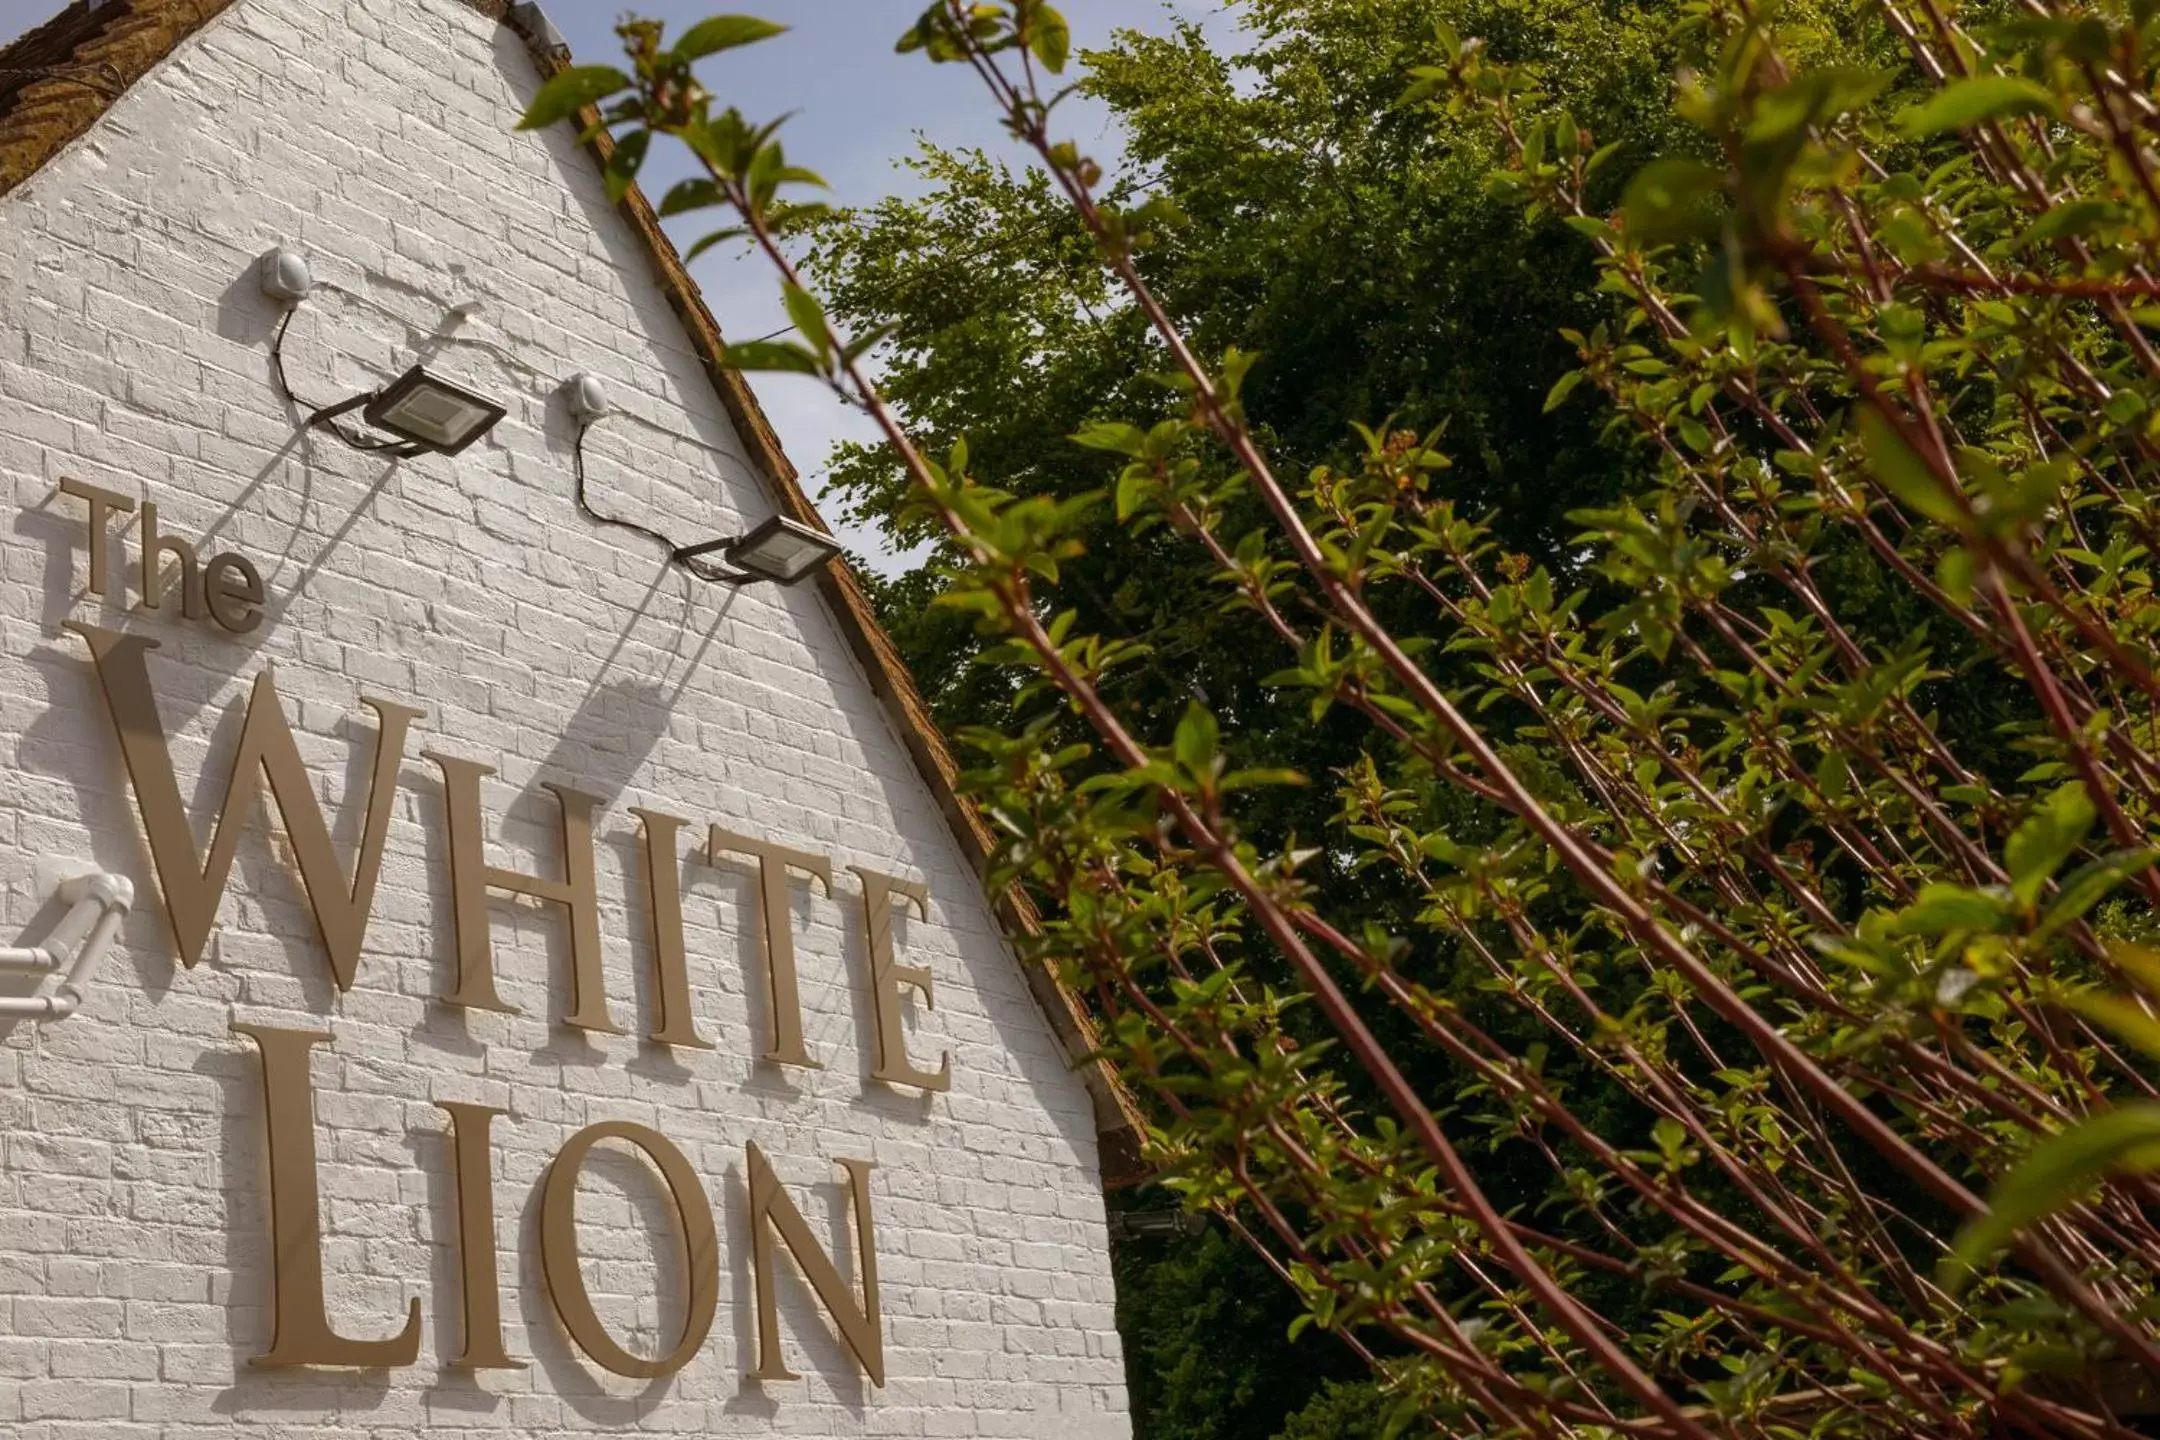 The White Lion, Soberton